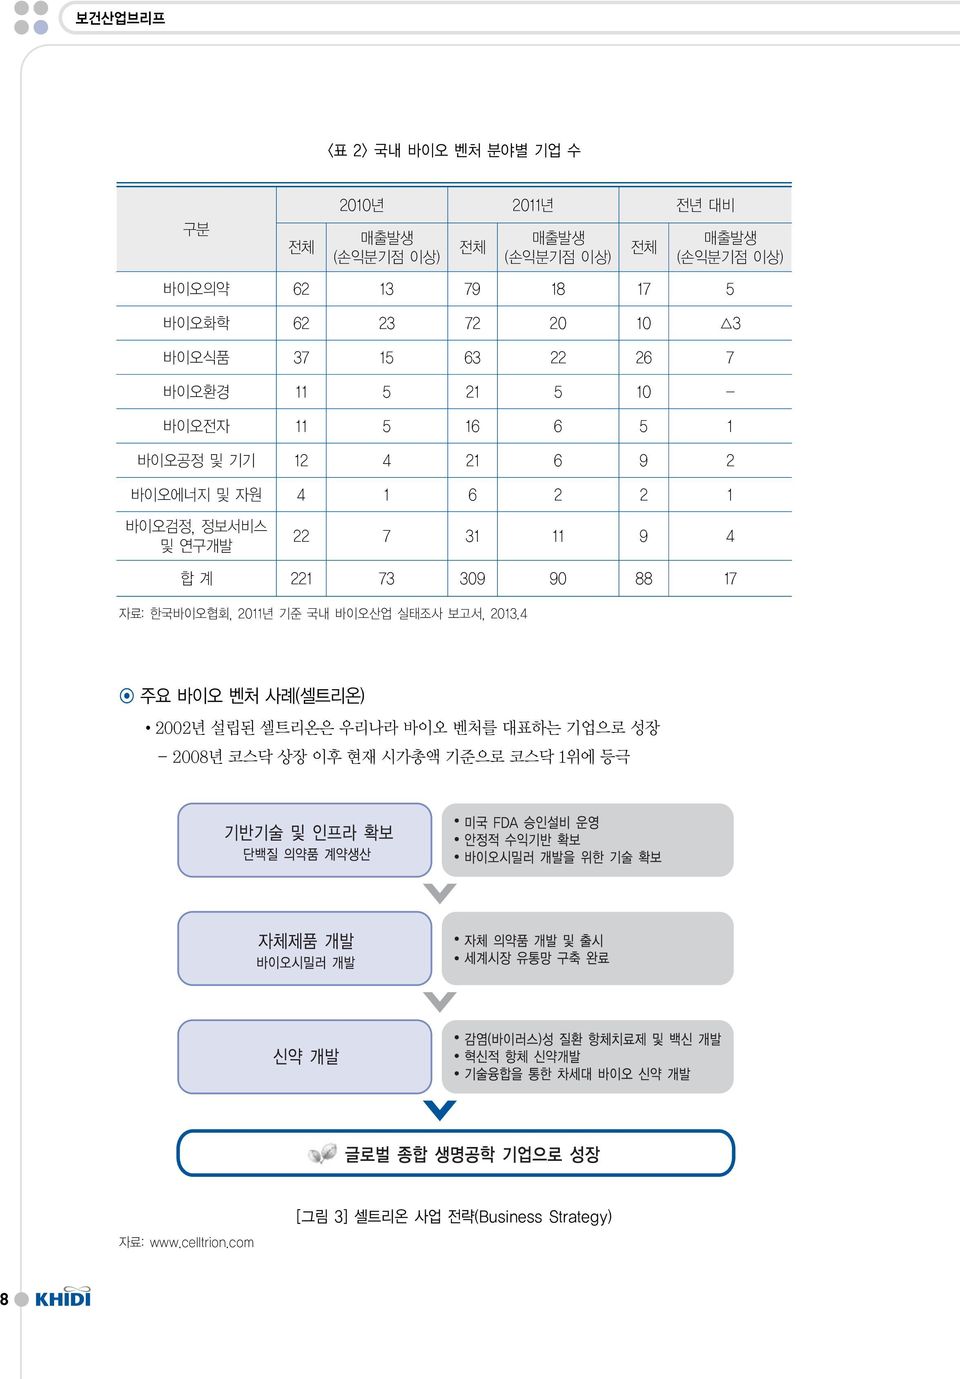 1 바이오검정, 정보서비스 및 연구개발 22 7 31 11 9 4 합계 221 73 309 90 88 17 자료: 한국바이오협회, 2011년 기준 국내 바이오산업 실태조사 보고서, 2013.